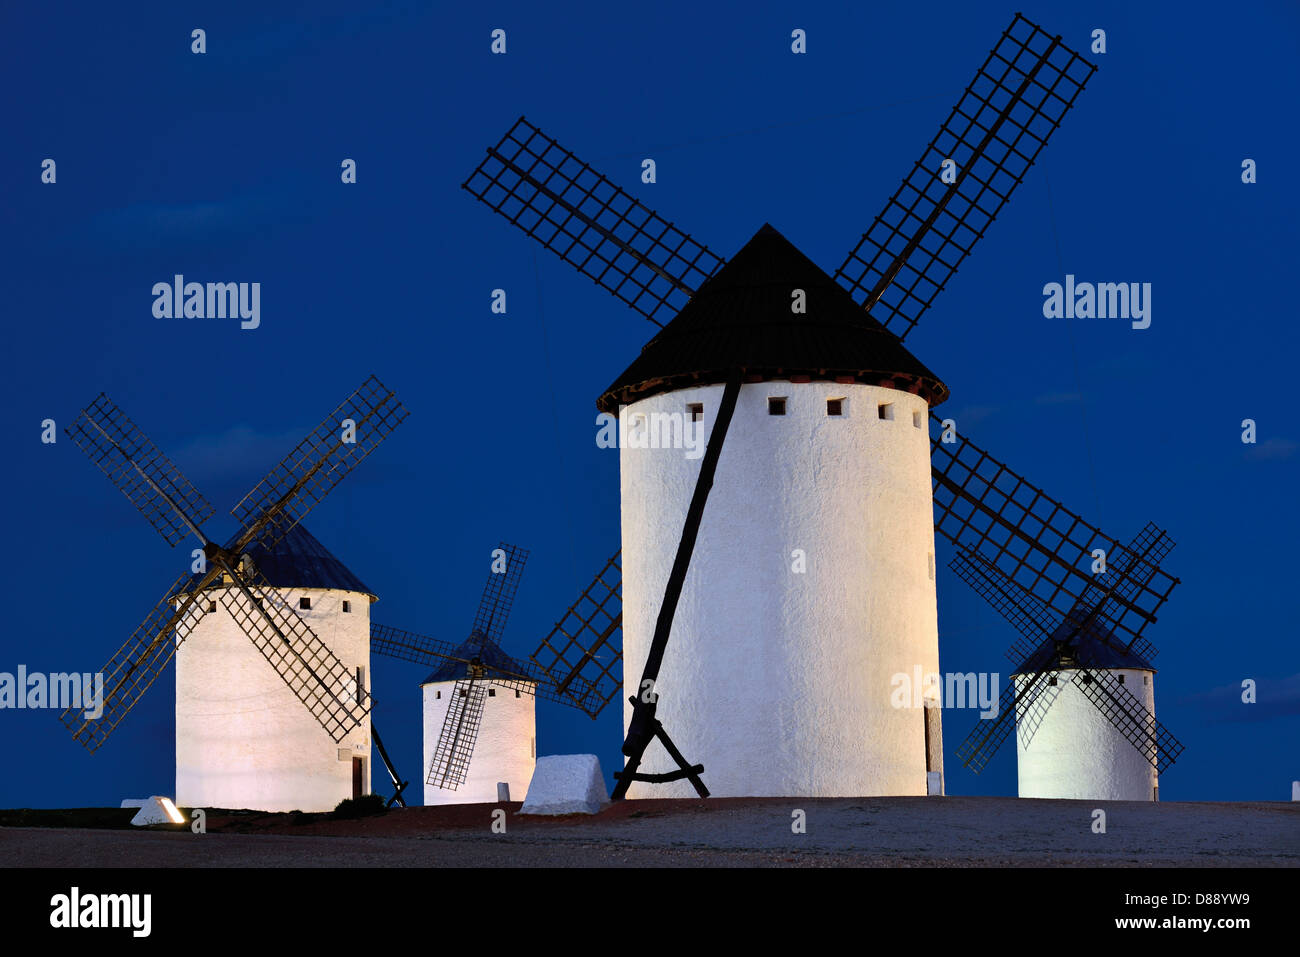 L'Espagne, Castille la Manche : vue nocturne de quatre moulins à vent de Campo de Criptana Banque D'Images